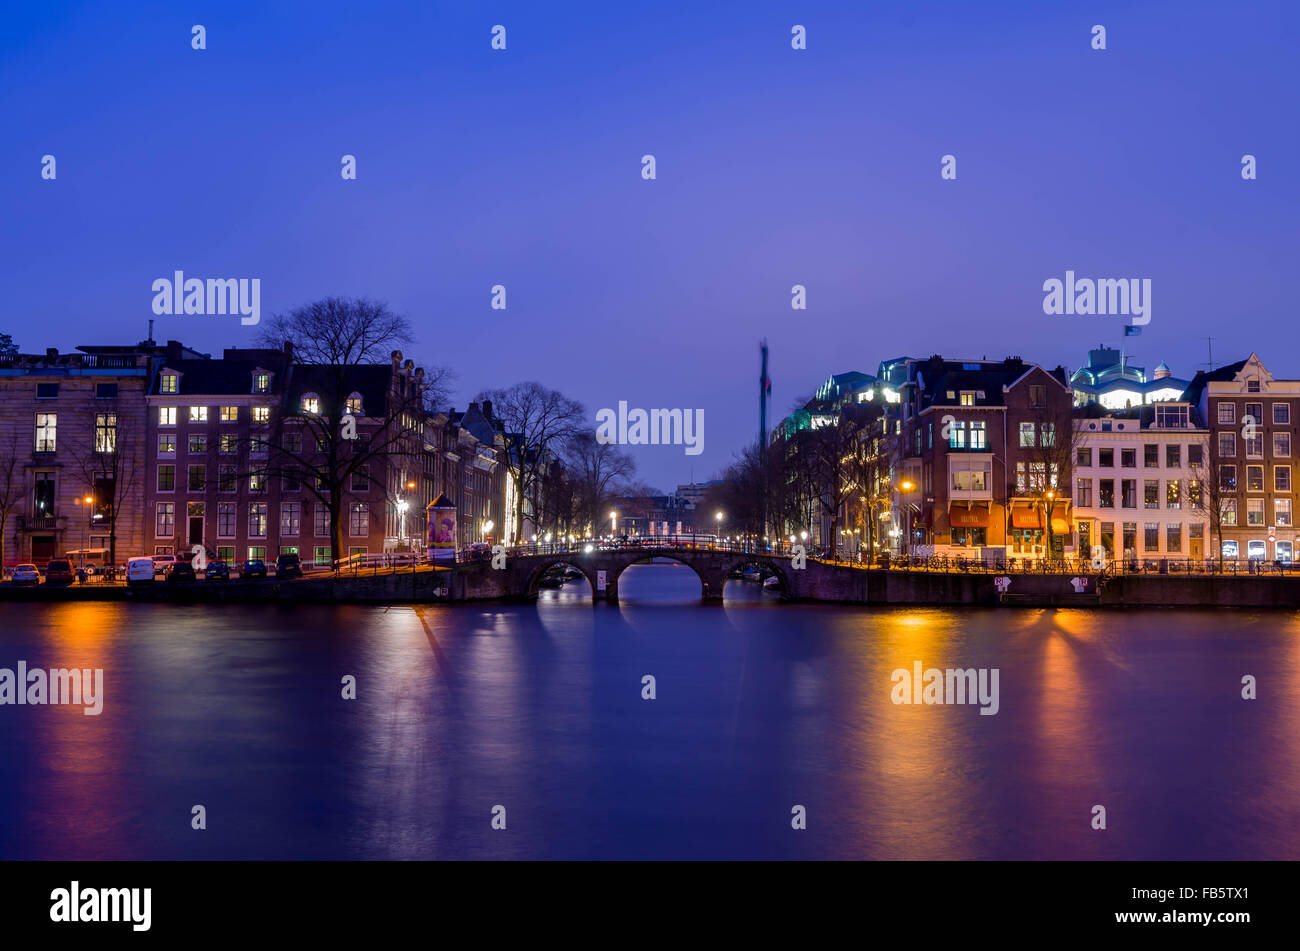 Canal de Amsterdam, puentes y edificios en las noches de invierno Foto de stock